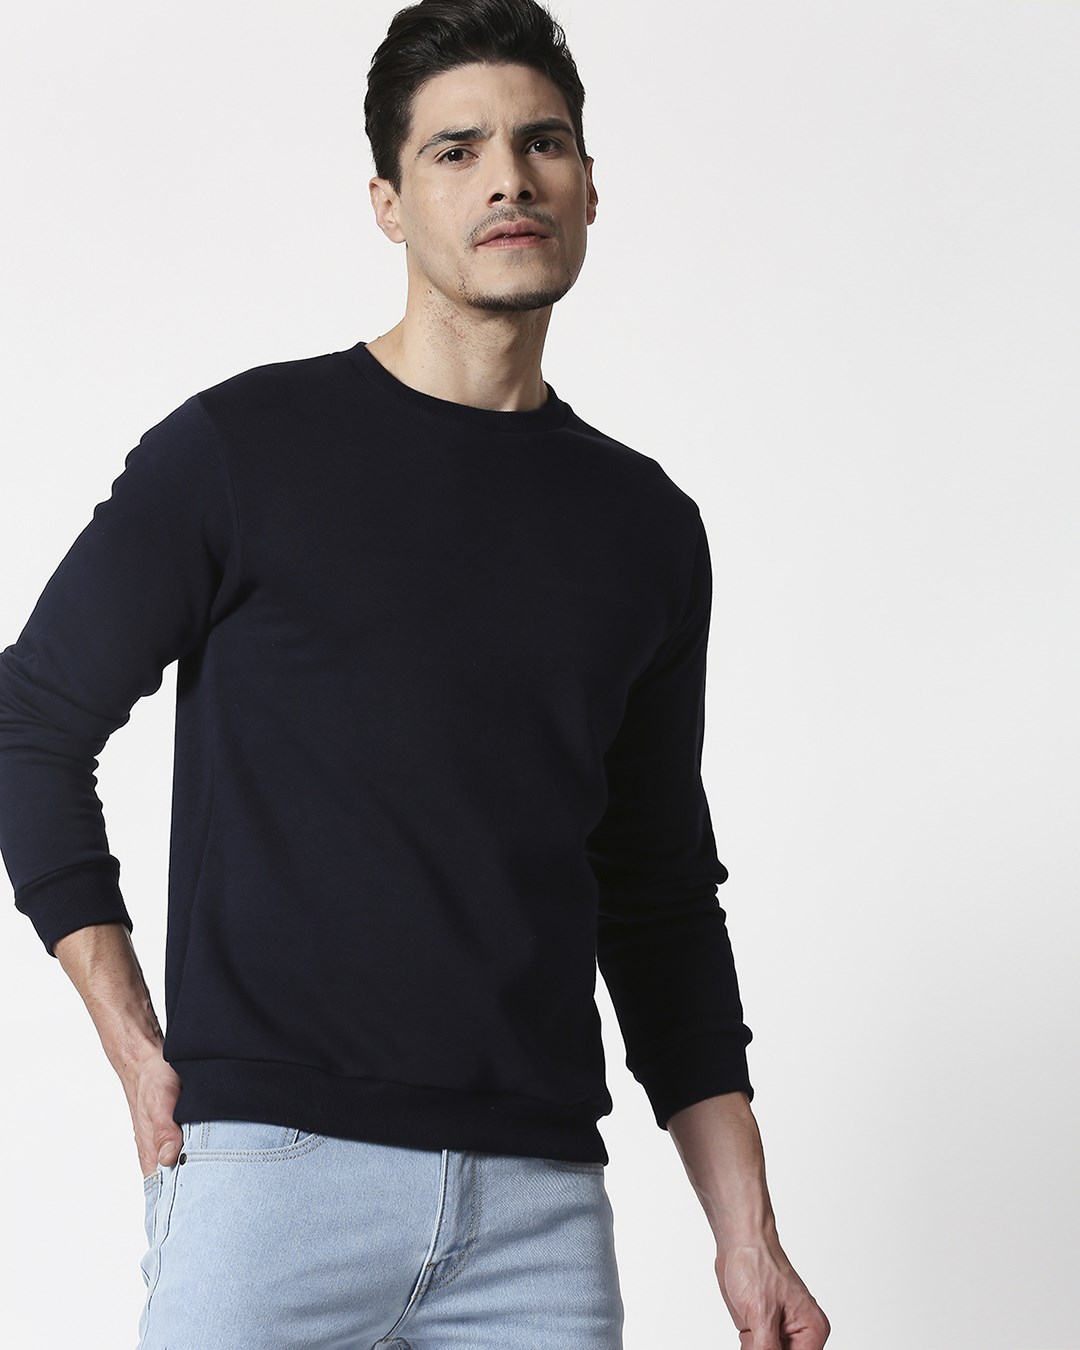 Buy Navy Blue Fleece Sweatshirt for Men blue Online at Bewakoof